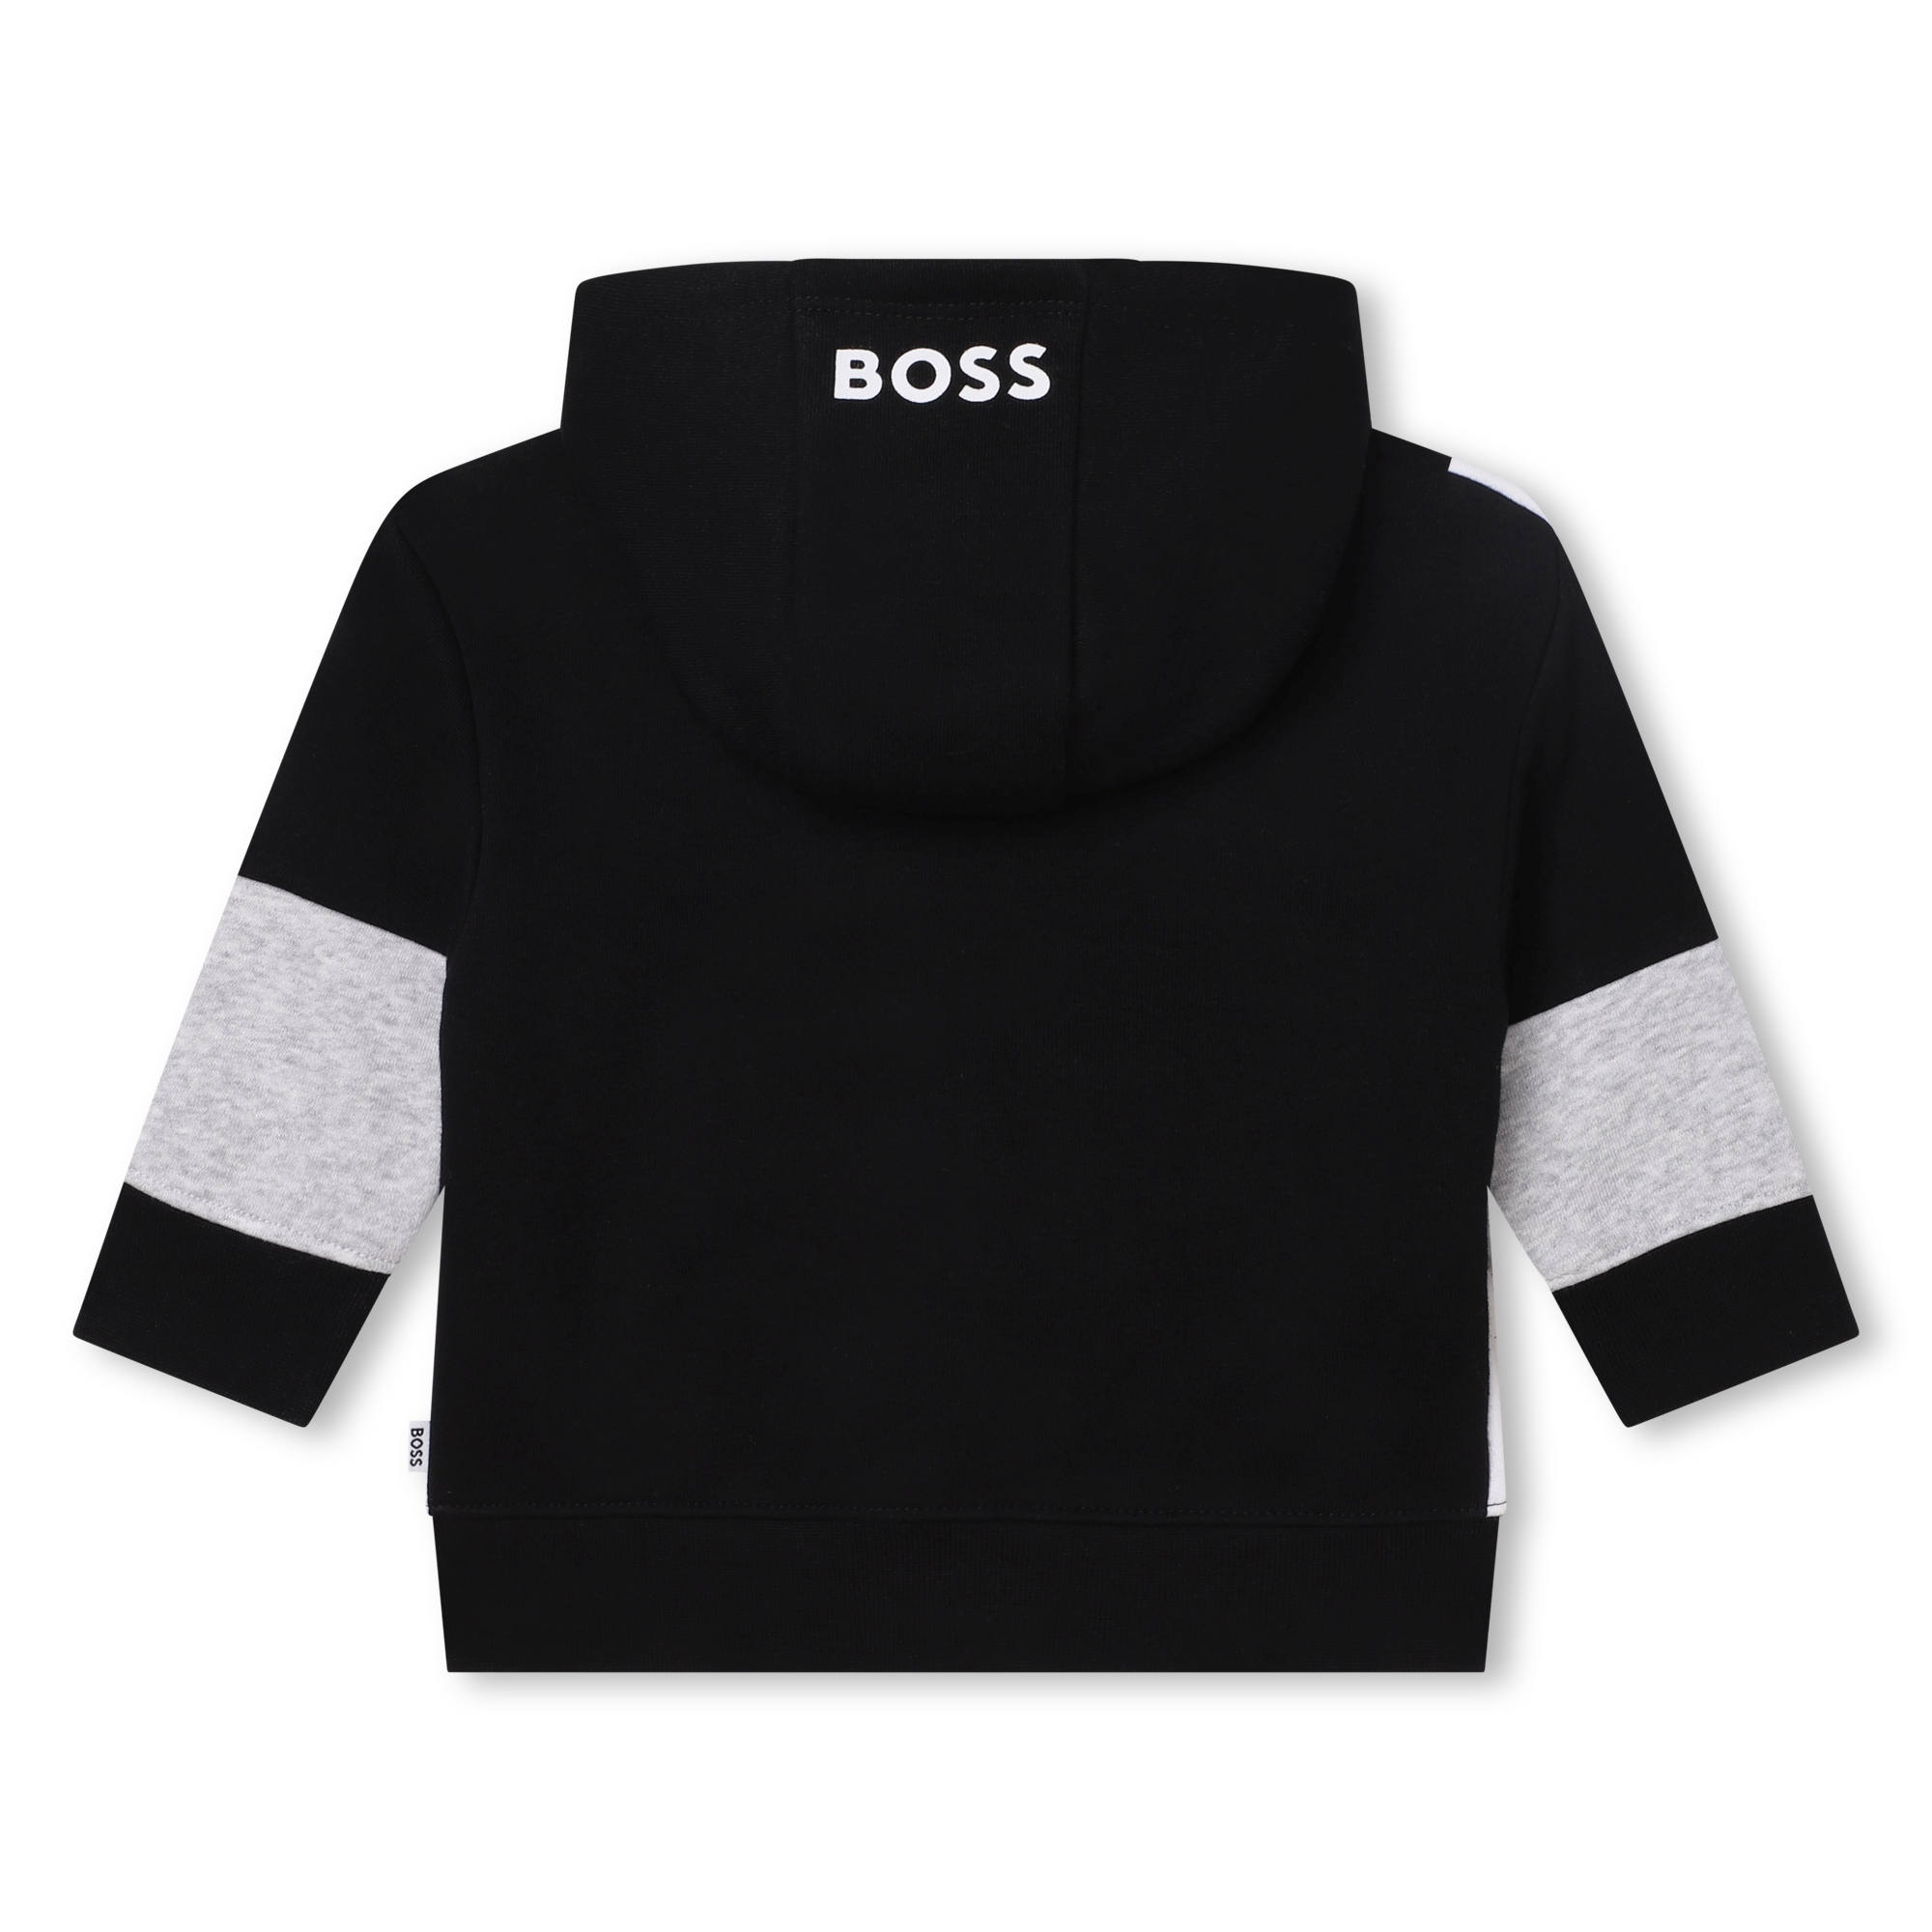 Tricoloured zip-up sweatshirt BOSS for BOY